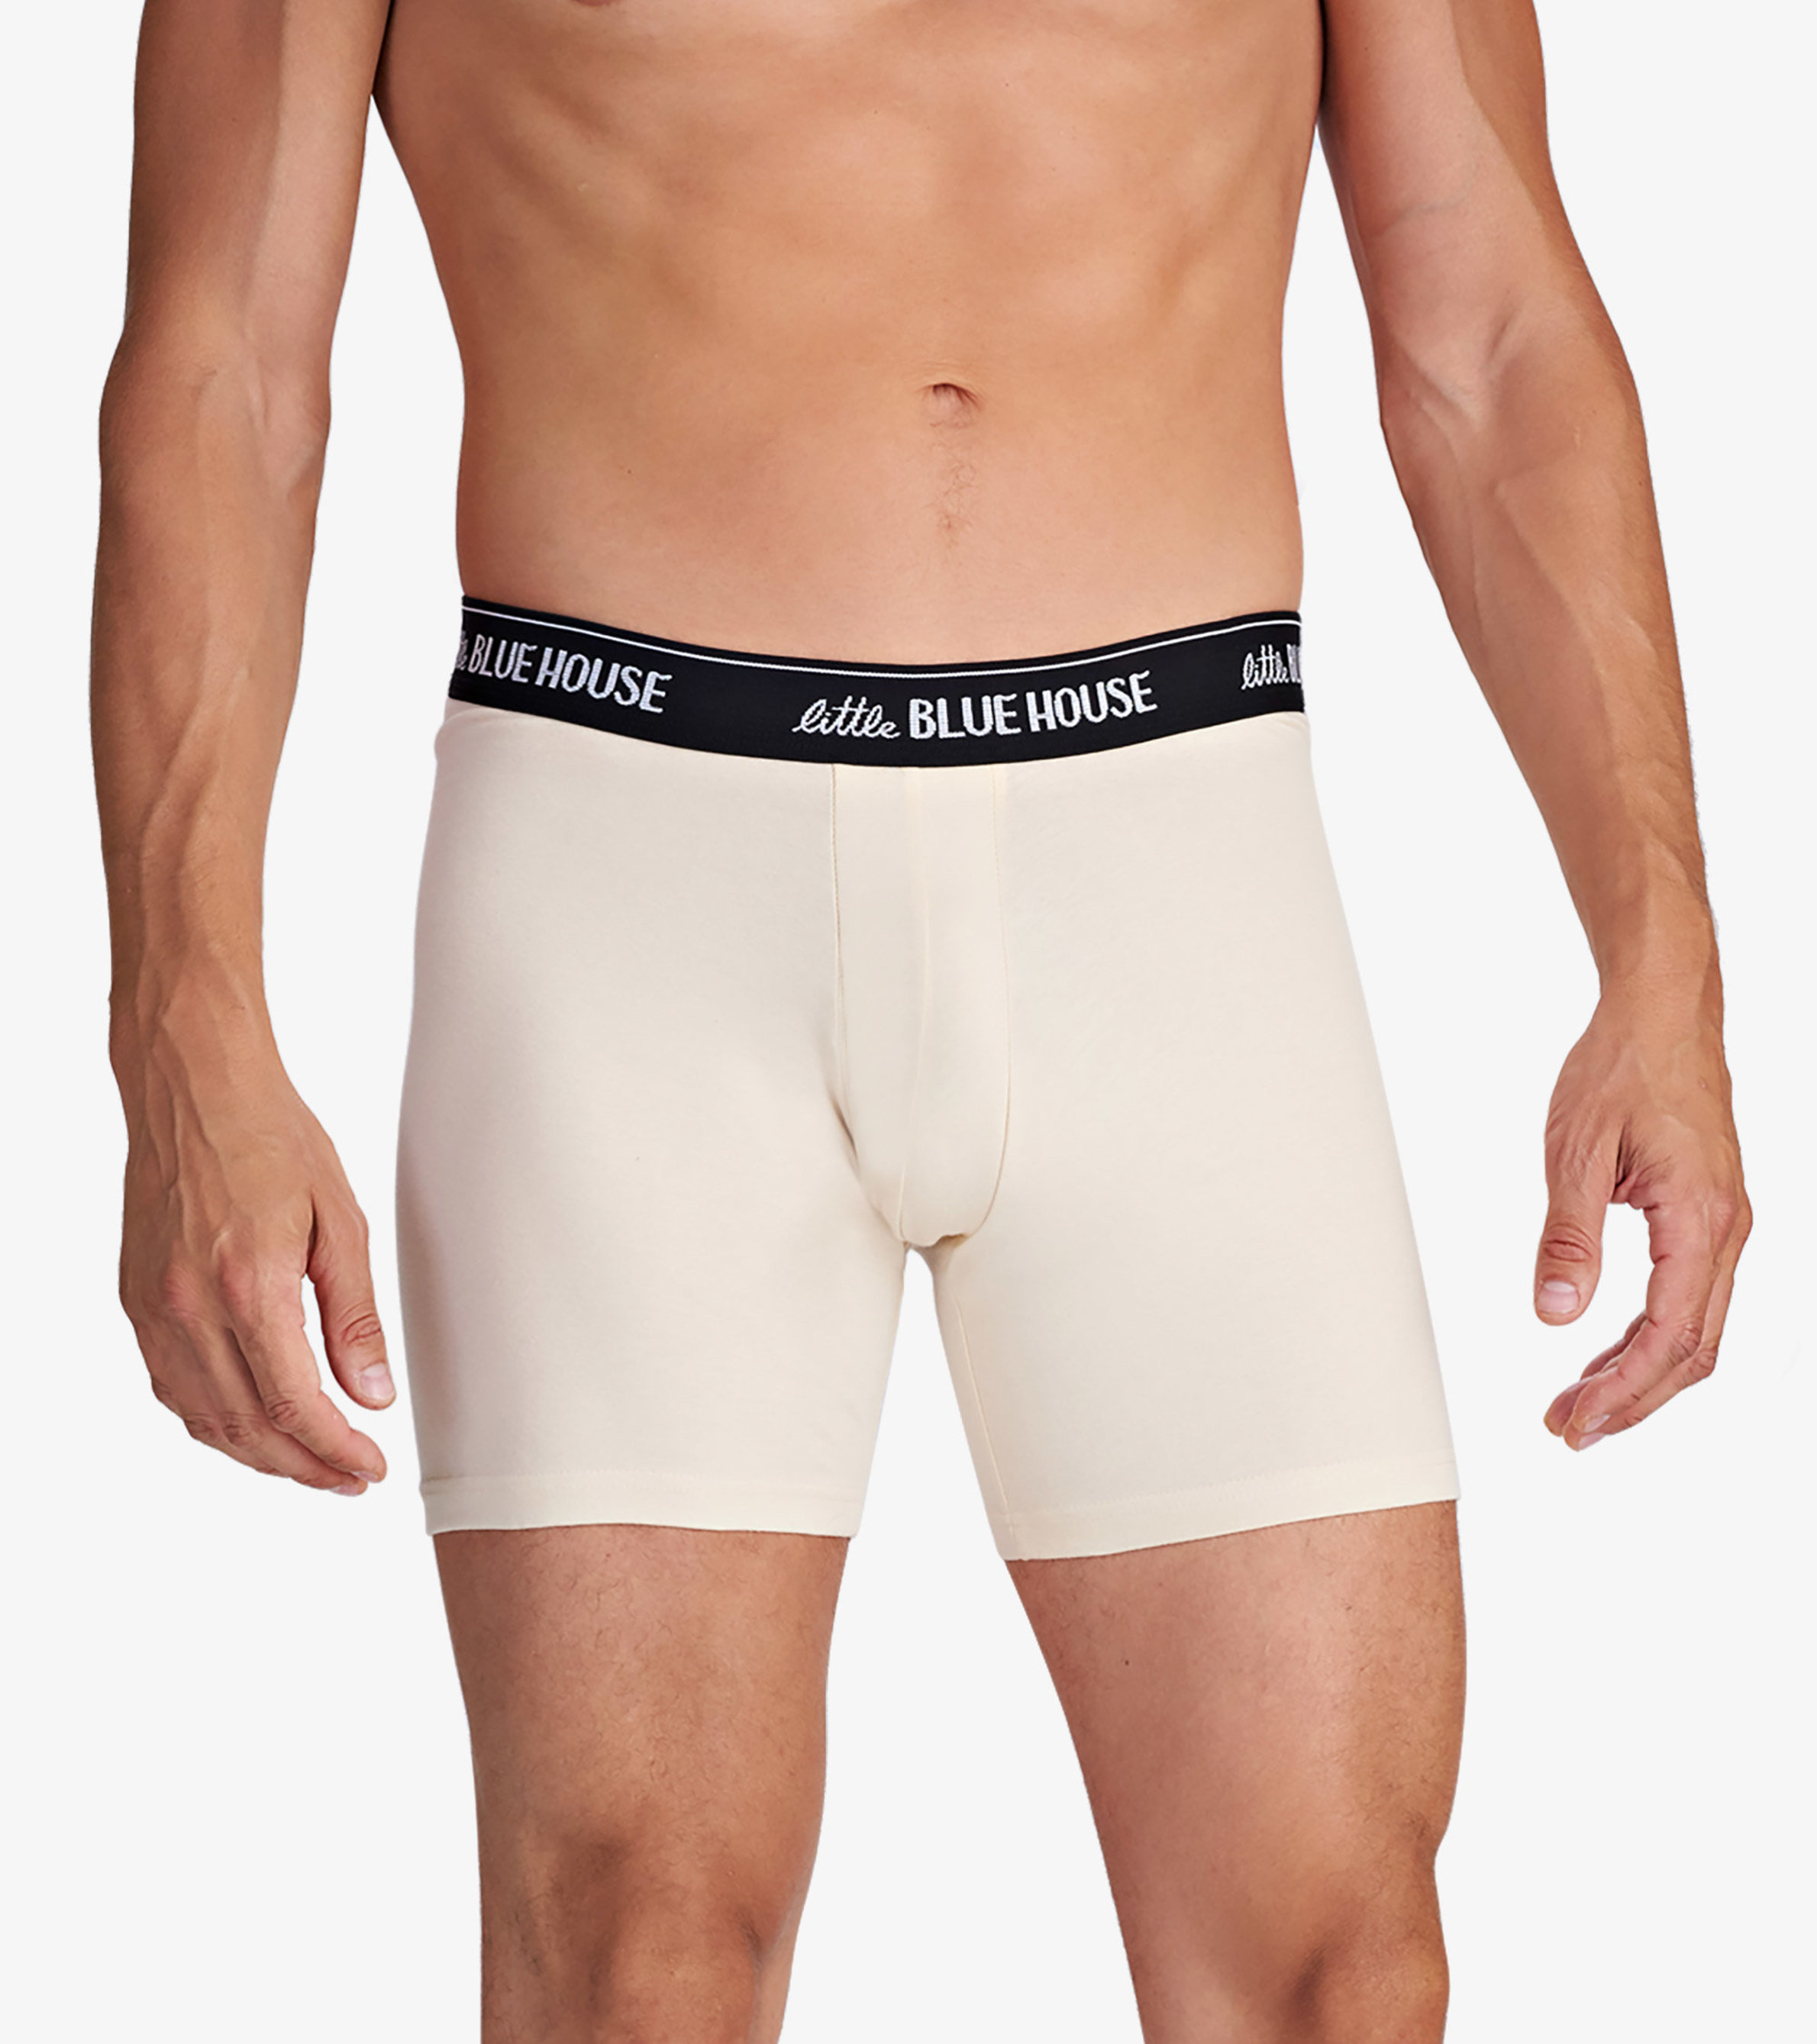 Bluey Underwearboys Cotton Briefs 12-pack - Bear Design, Breathable  Underwear M-xl